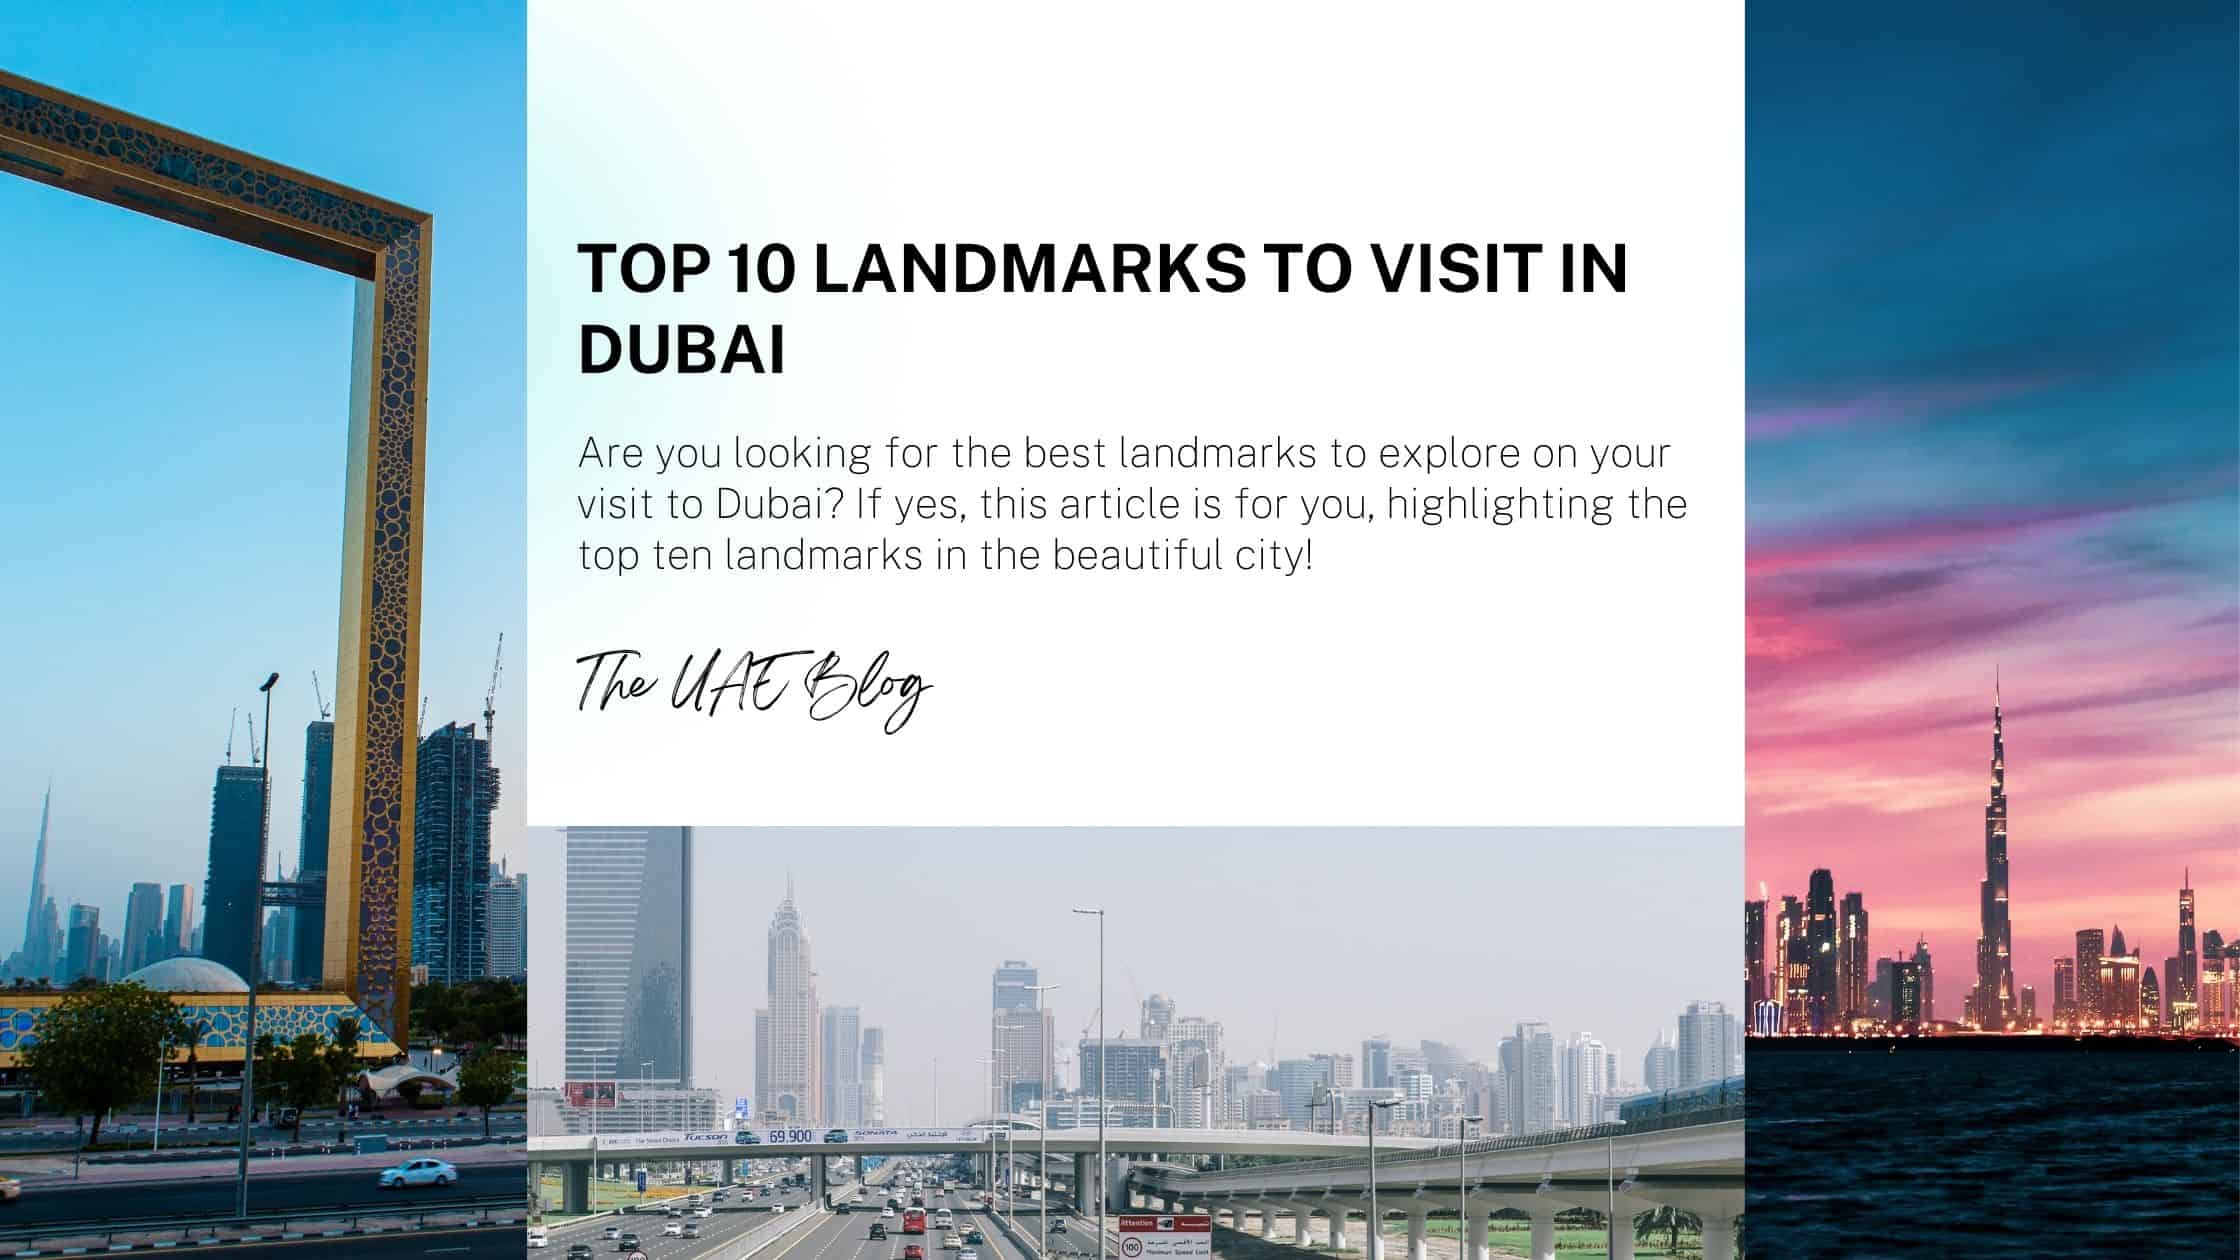 Top 10 landmarks to visit in Dubai